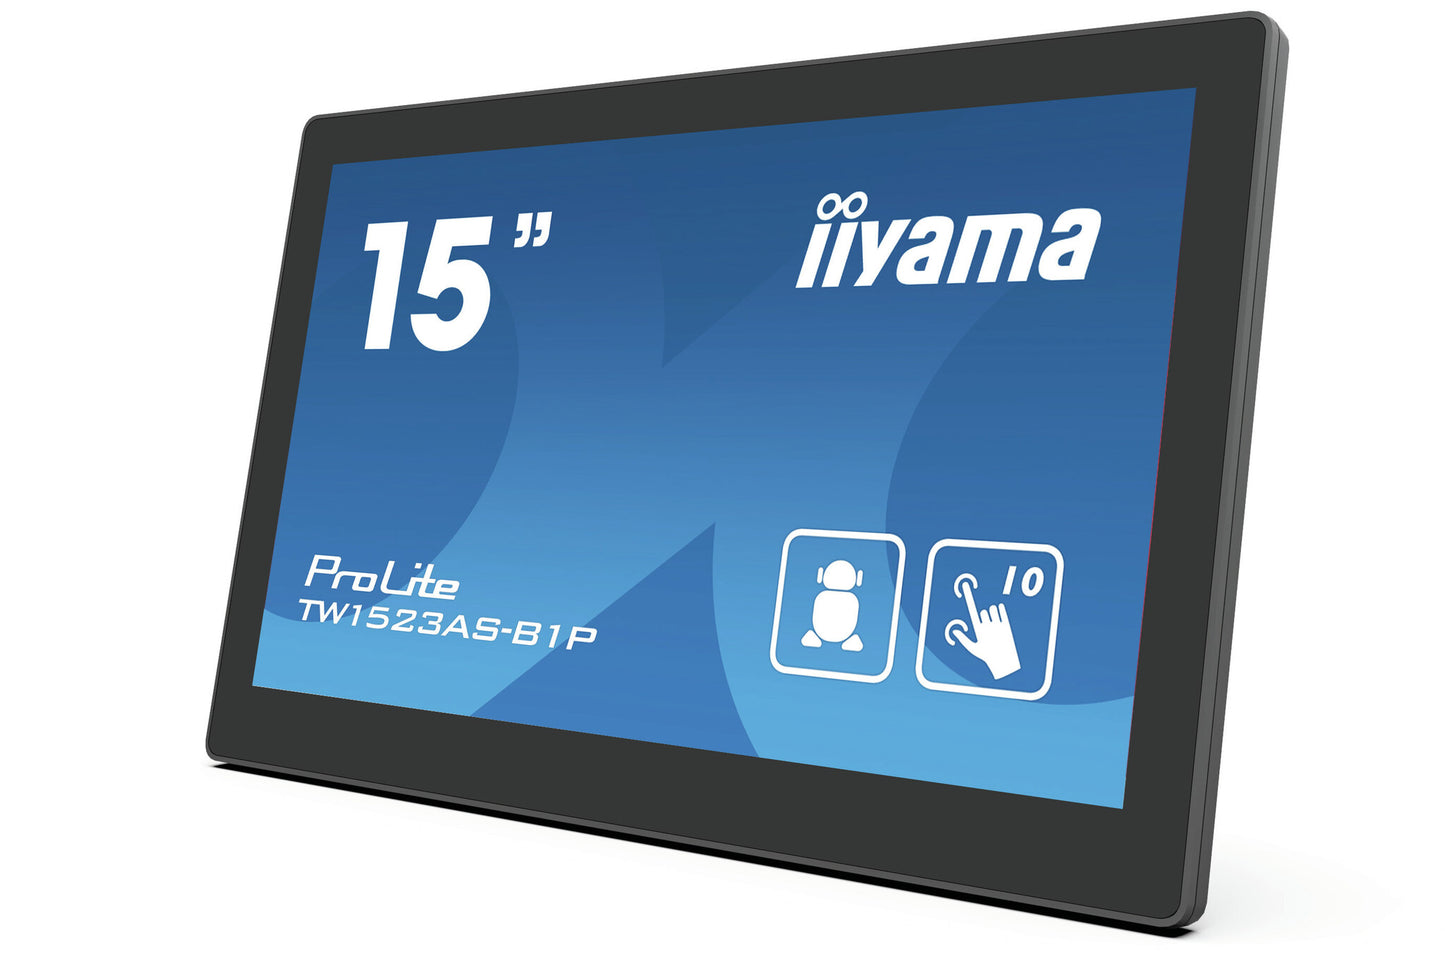 iiyama TW1523AS-B1P